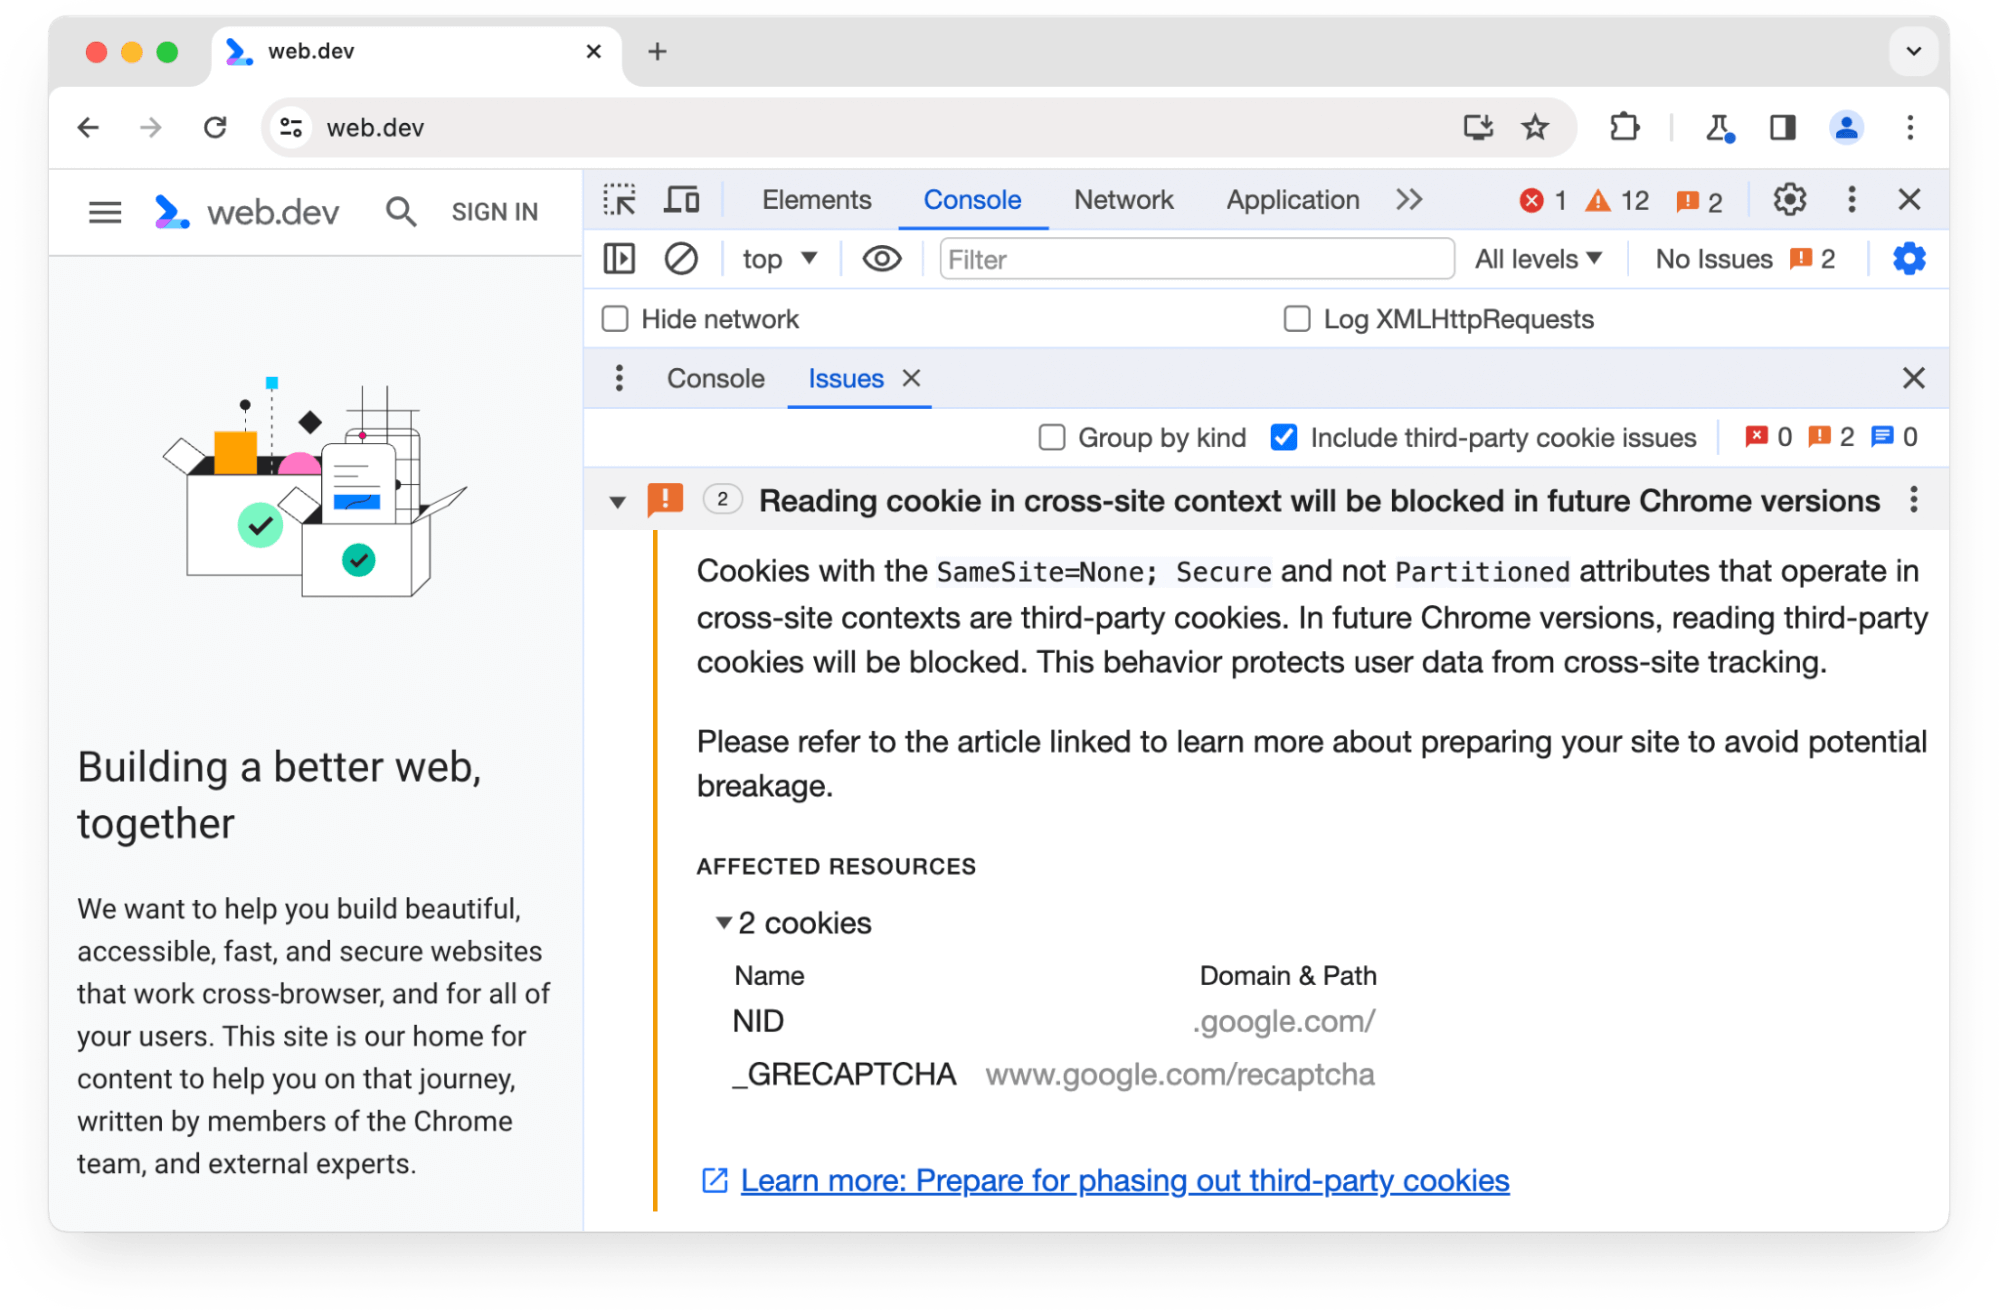 Panel Masalah Chrome DevTools memperingatkan tentang 2 cookie pihak ketiga yang akan diblokir di versi Chrome mendatang.